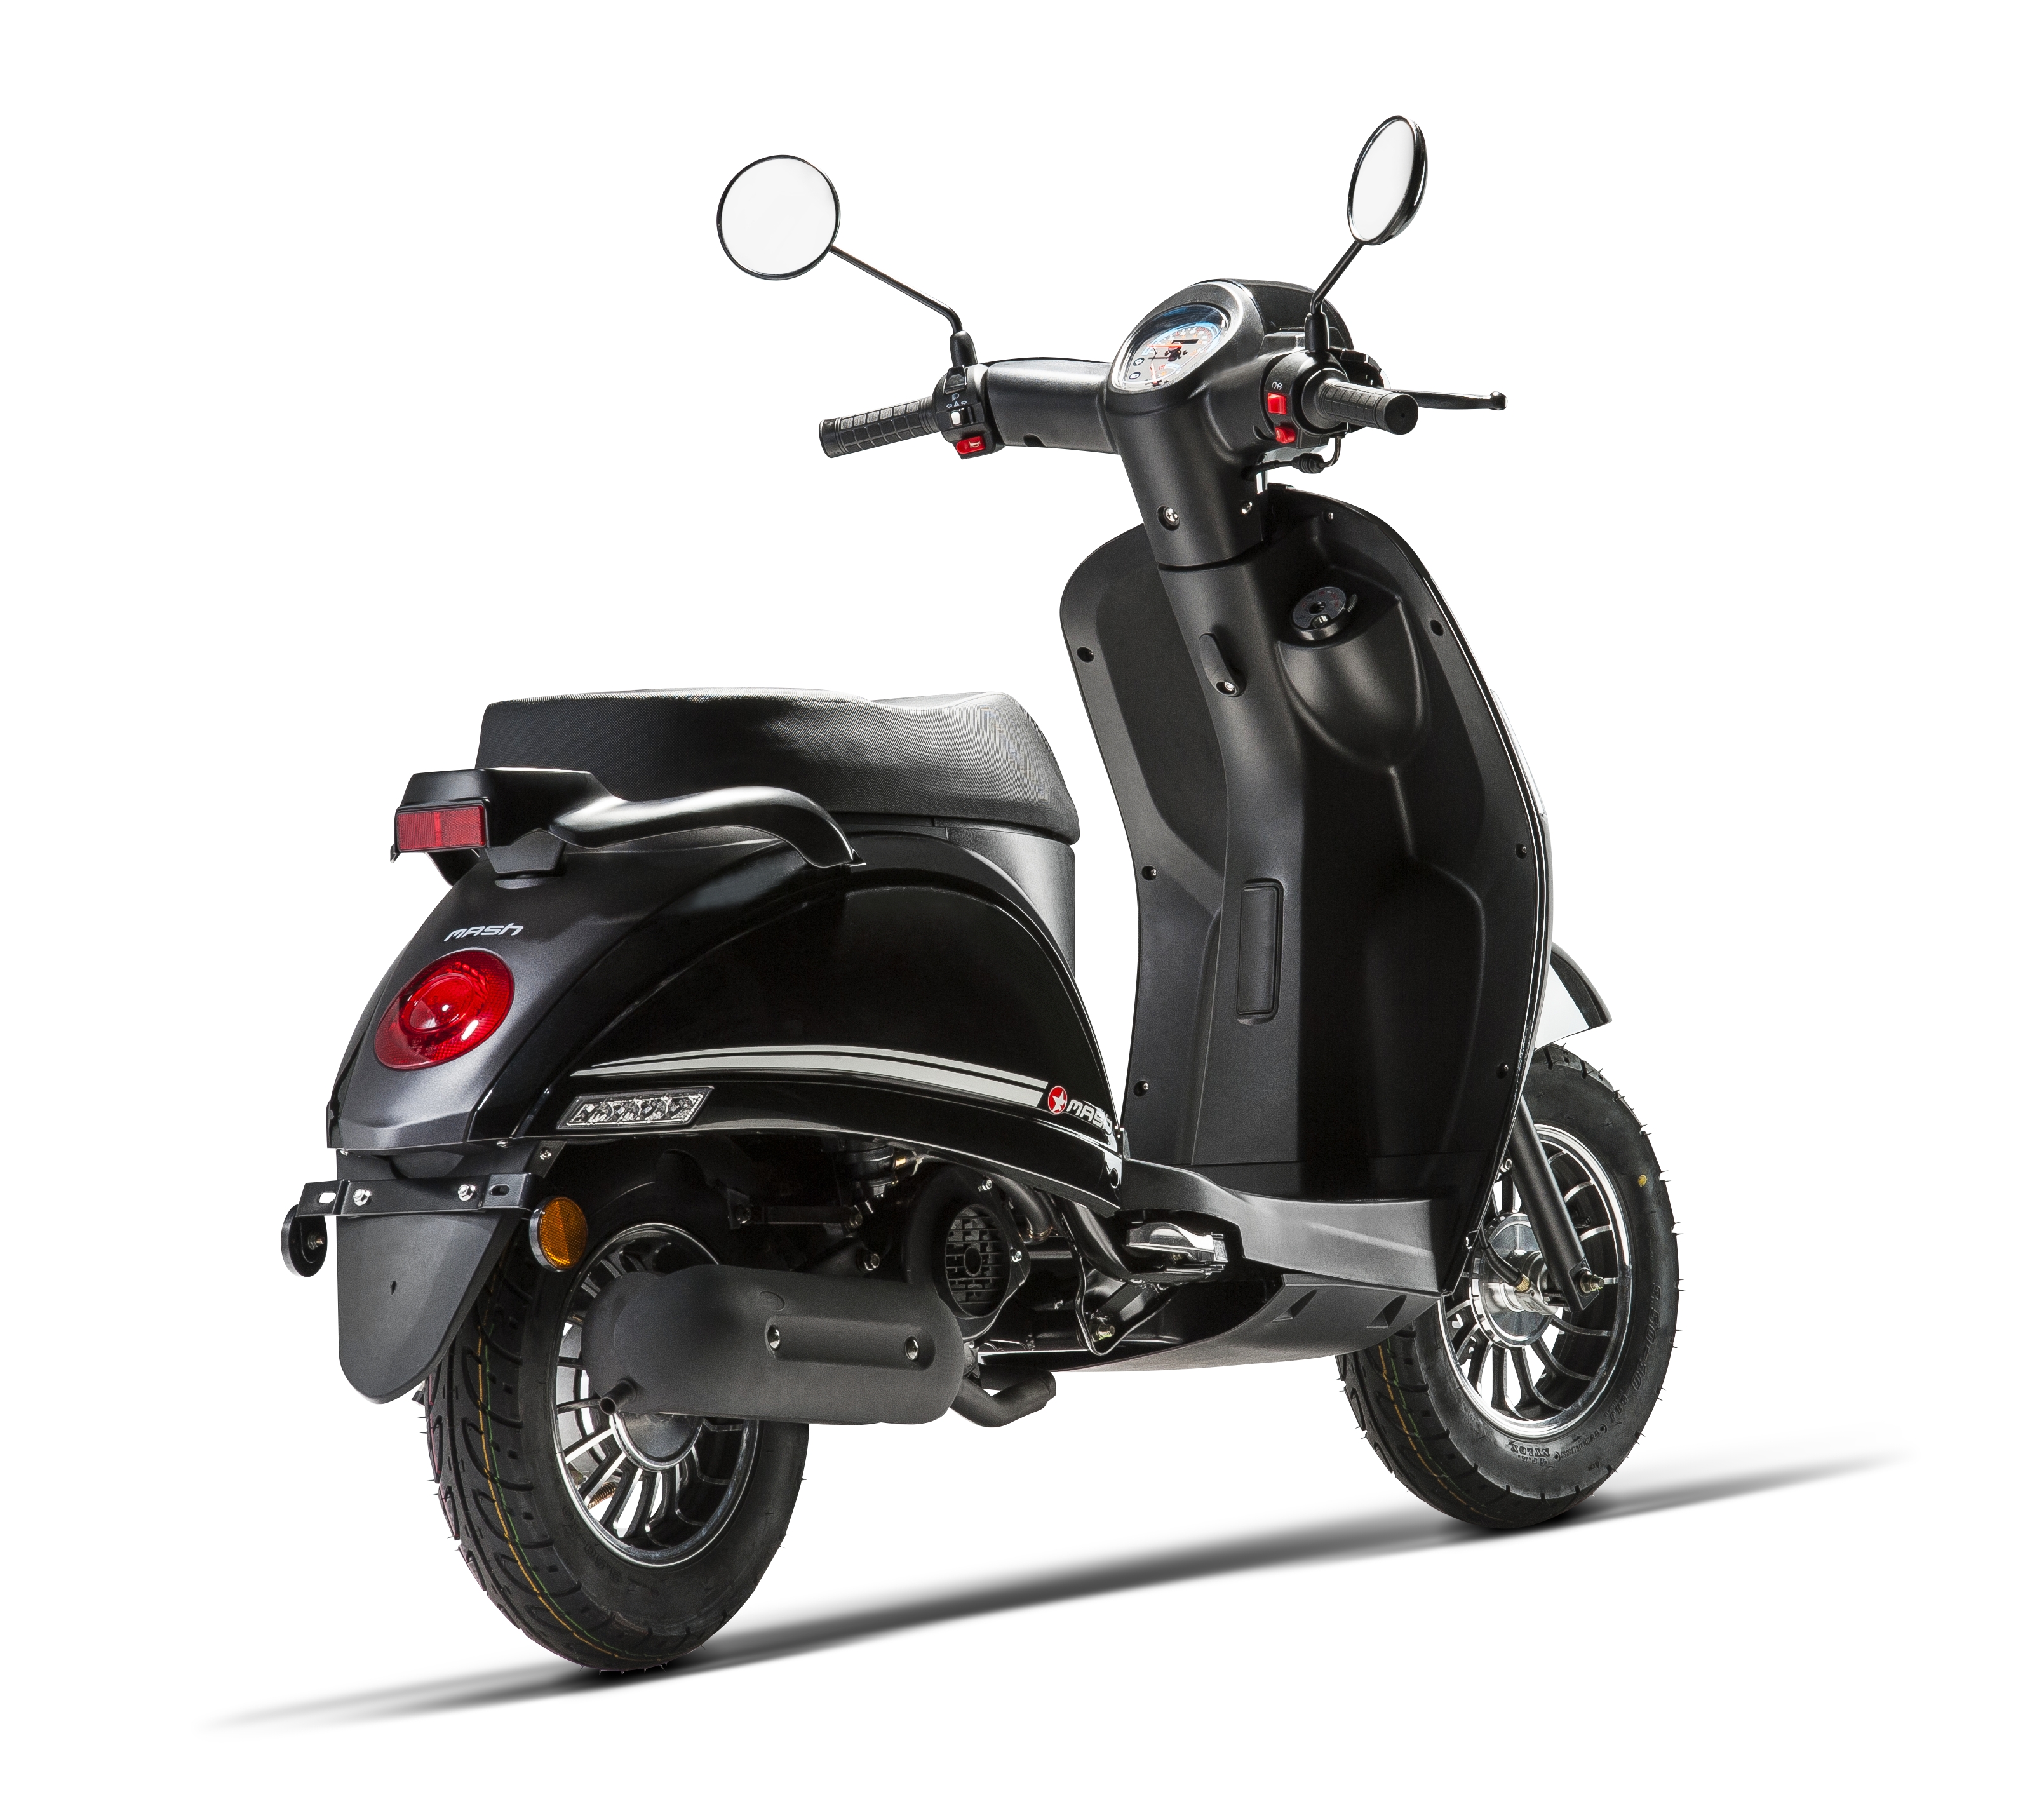 Mash Motas e Scooters Novas em Portugal - preços e características - Andar  de Moto